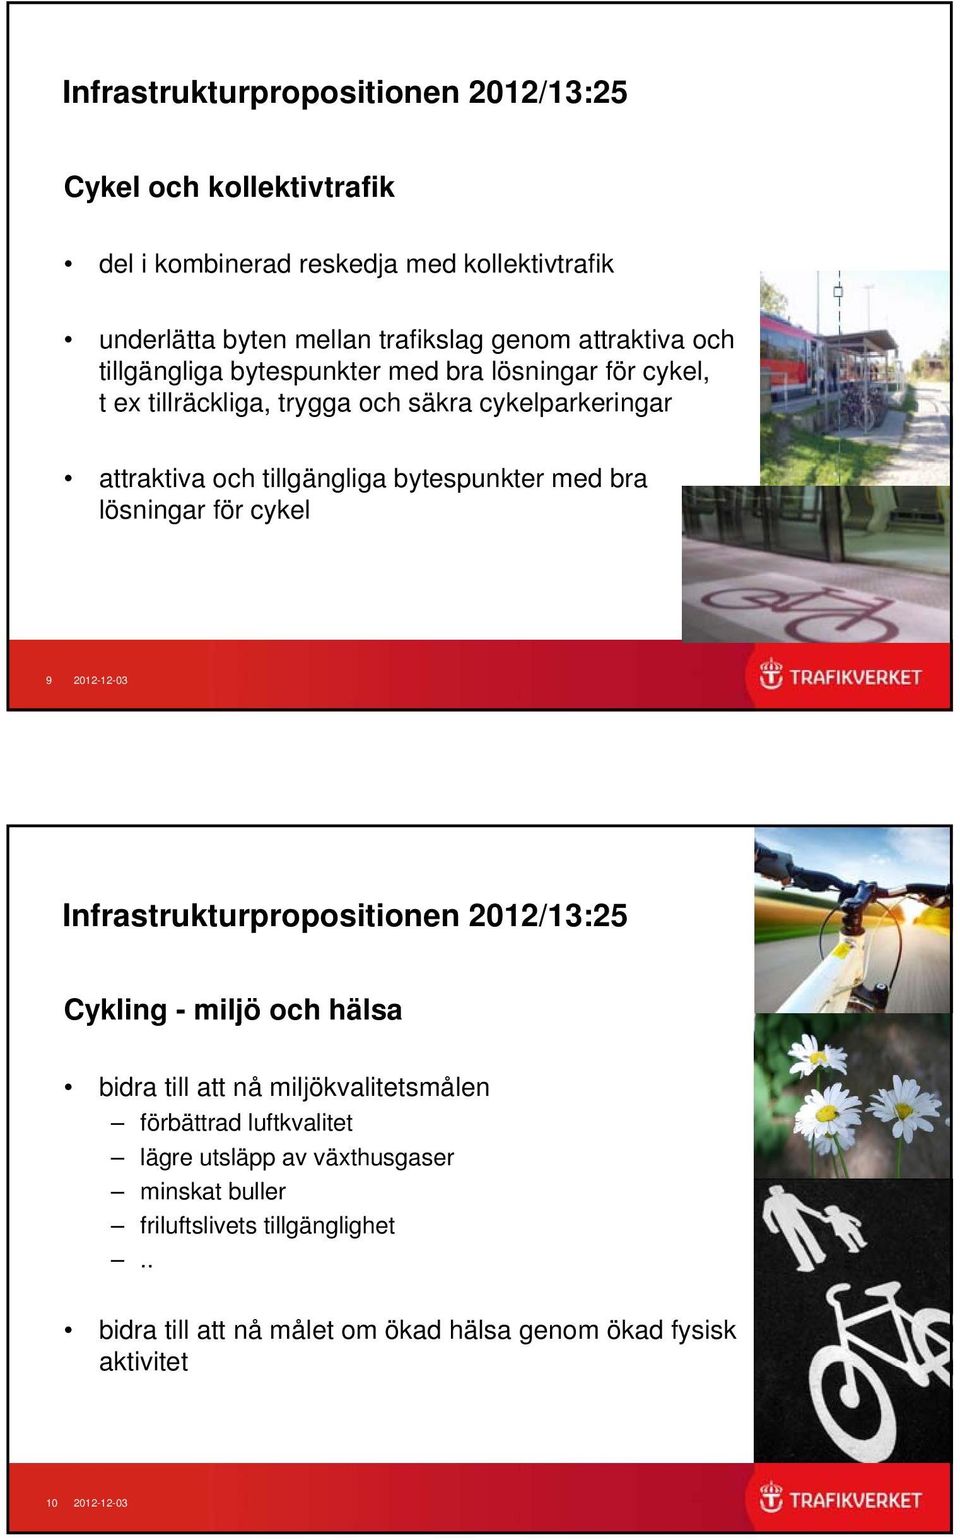 bytespunkter med bra lösningar för cykel 9 2012-12-03 Infrastrukturpropositionen 2012/13:25 Cykling - miljö och hälsa bidra till att nå miljökvalitetsmålen